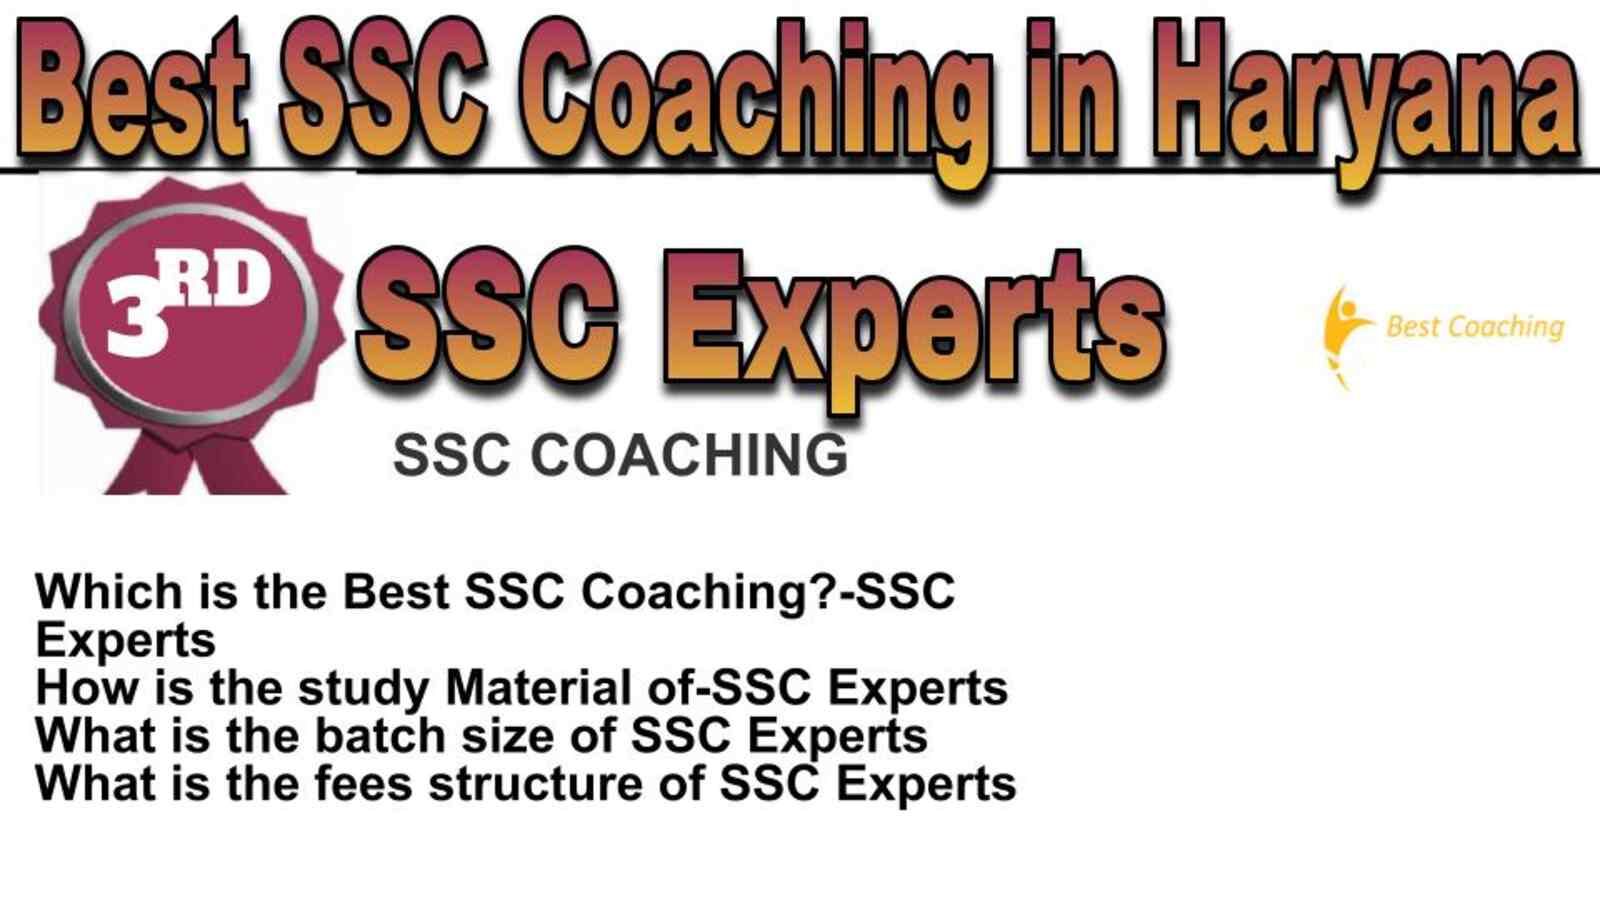 Rank 3 best SSC coaching in Haryana